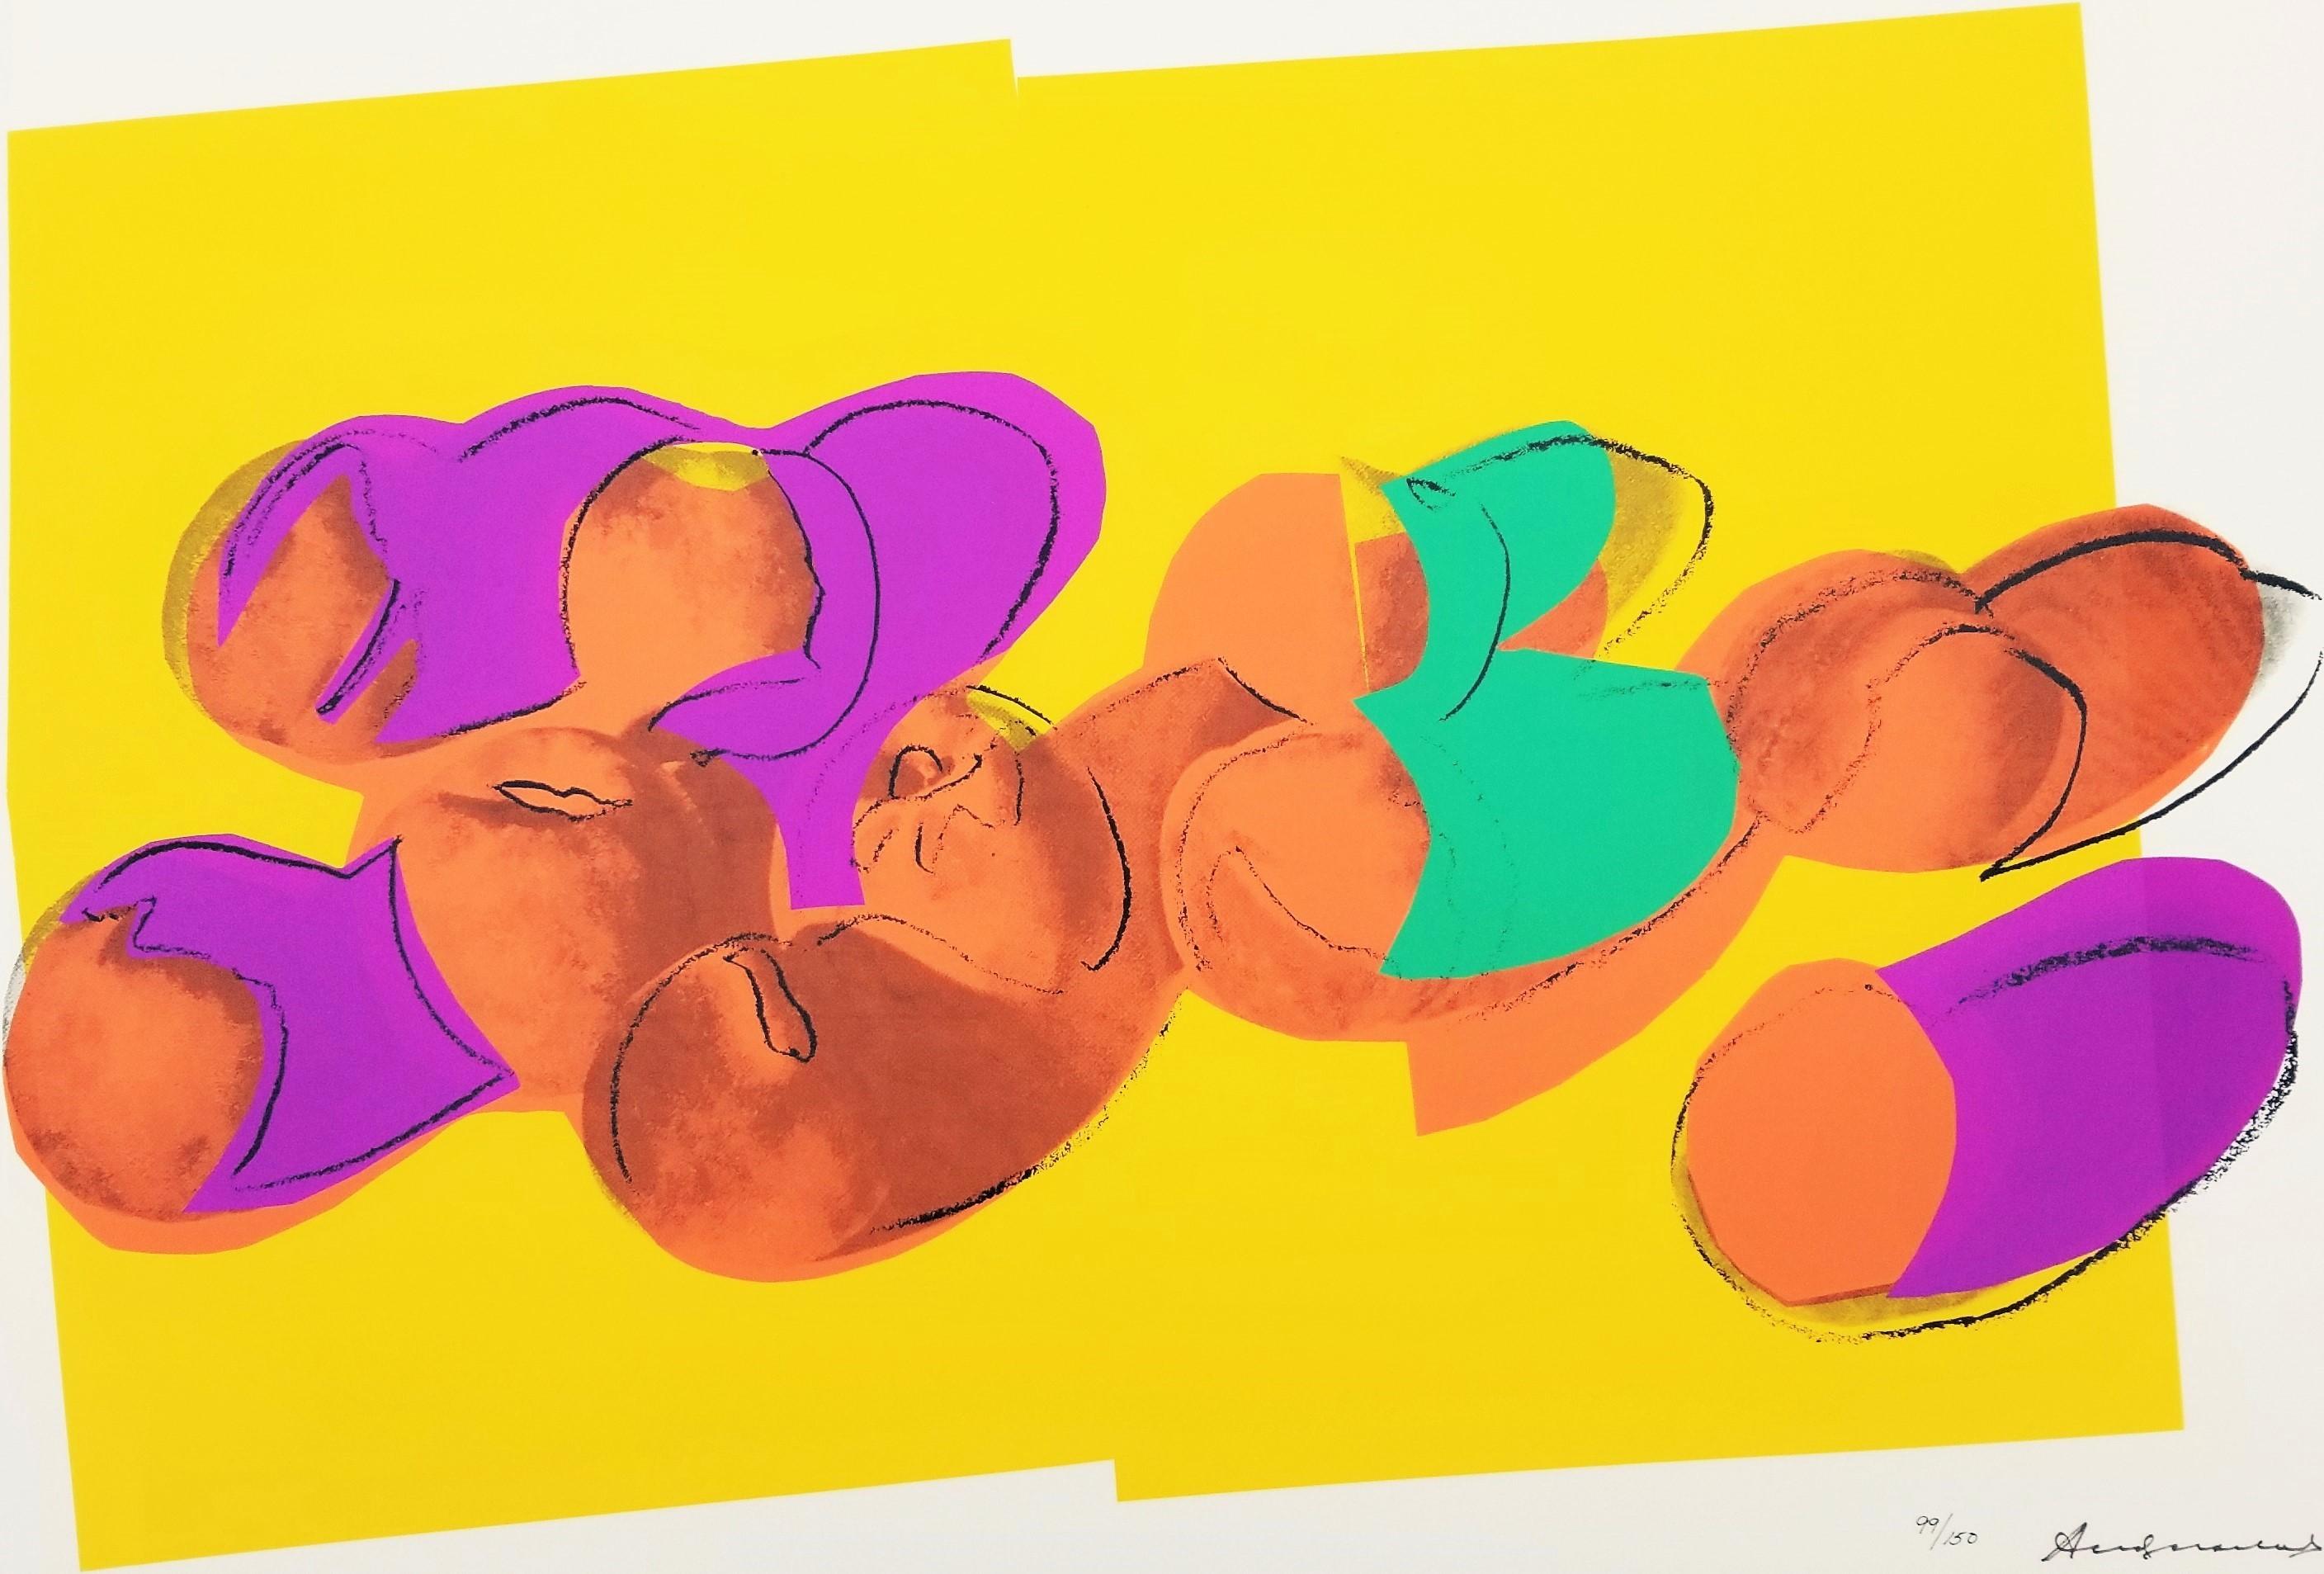 Artistics : Andy Warhol (américain, 1928-1987)
Titre : "Pêches"
Portfolio : Fruit de l'espace : Natures mortes
*Signée par Warhol au feutre en bas à droite
Année : 1979
Support : Sérigraphie originale sur Lenox Museum Board
Édition limitée : 99/150,